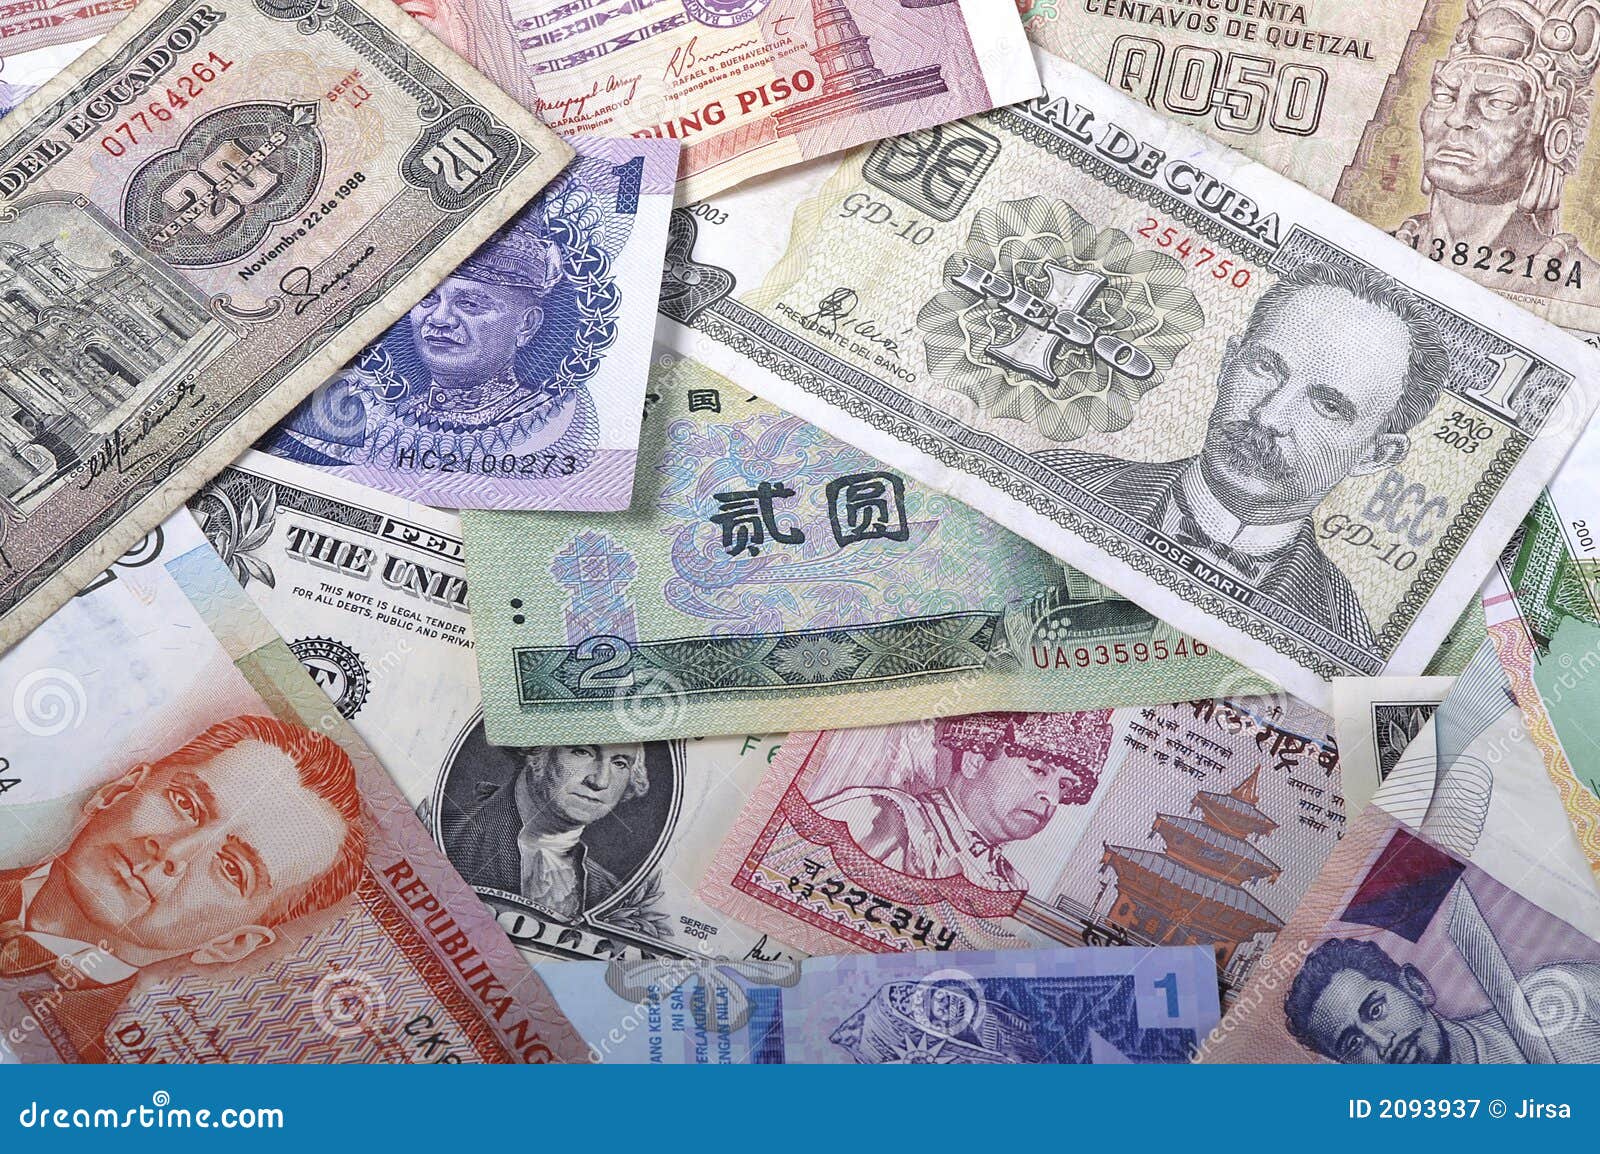 Кубинское песо к доллару на сегодня. Деньги Эквадора. Песо США. Деньги в 1576. The World's money.